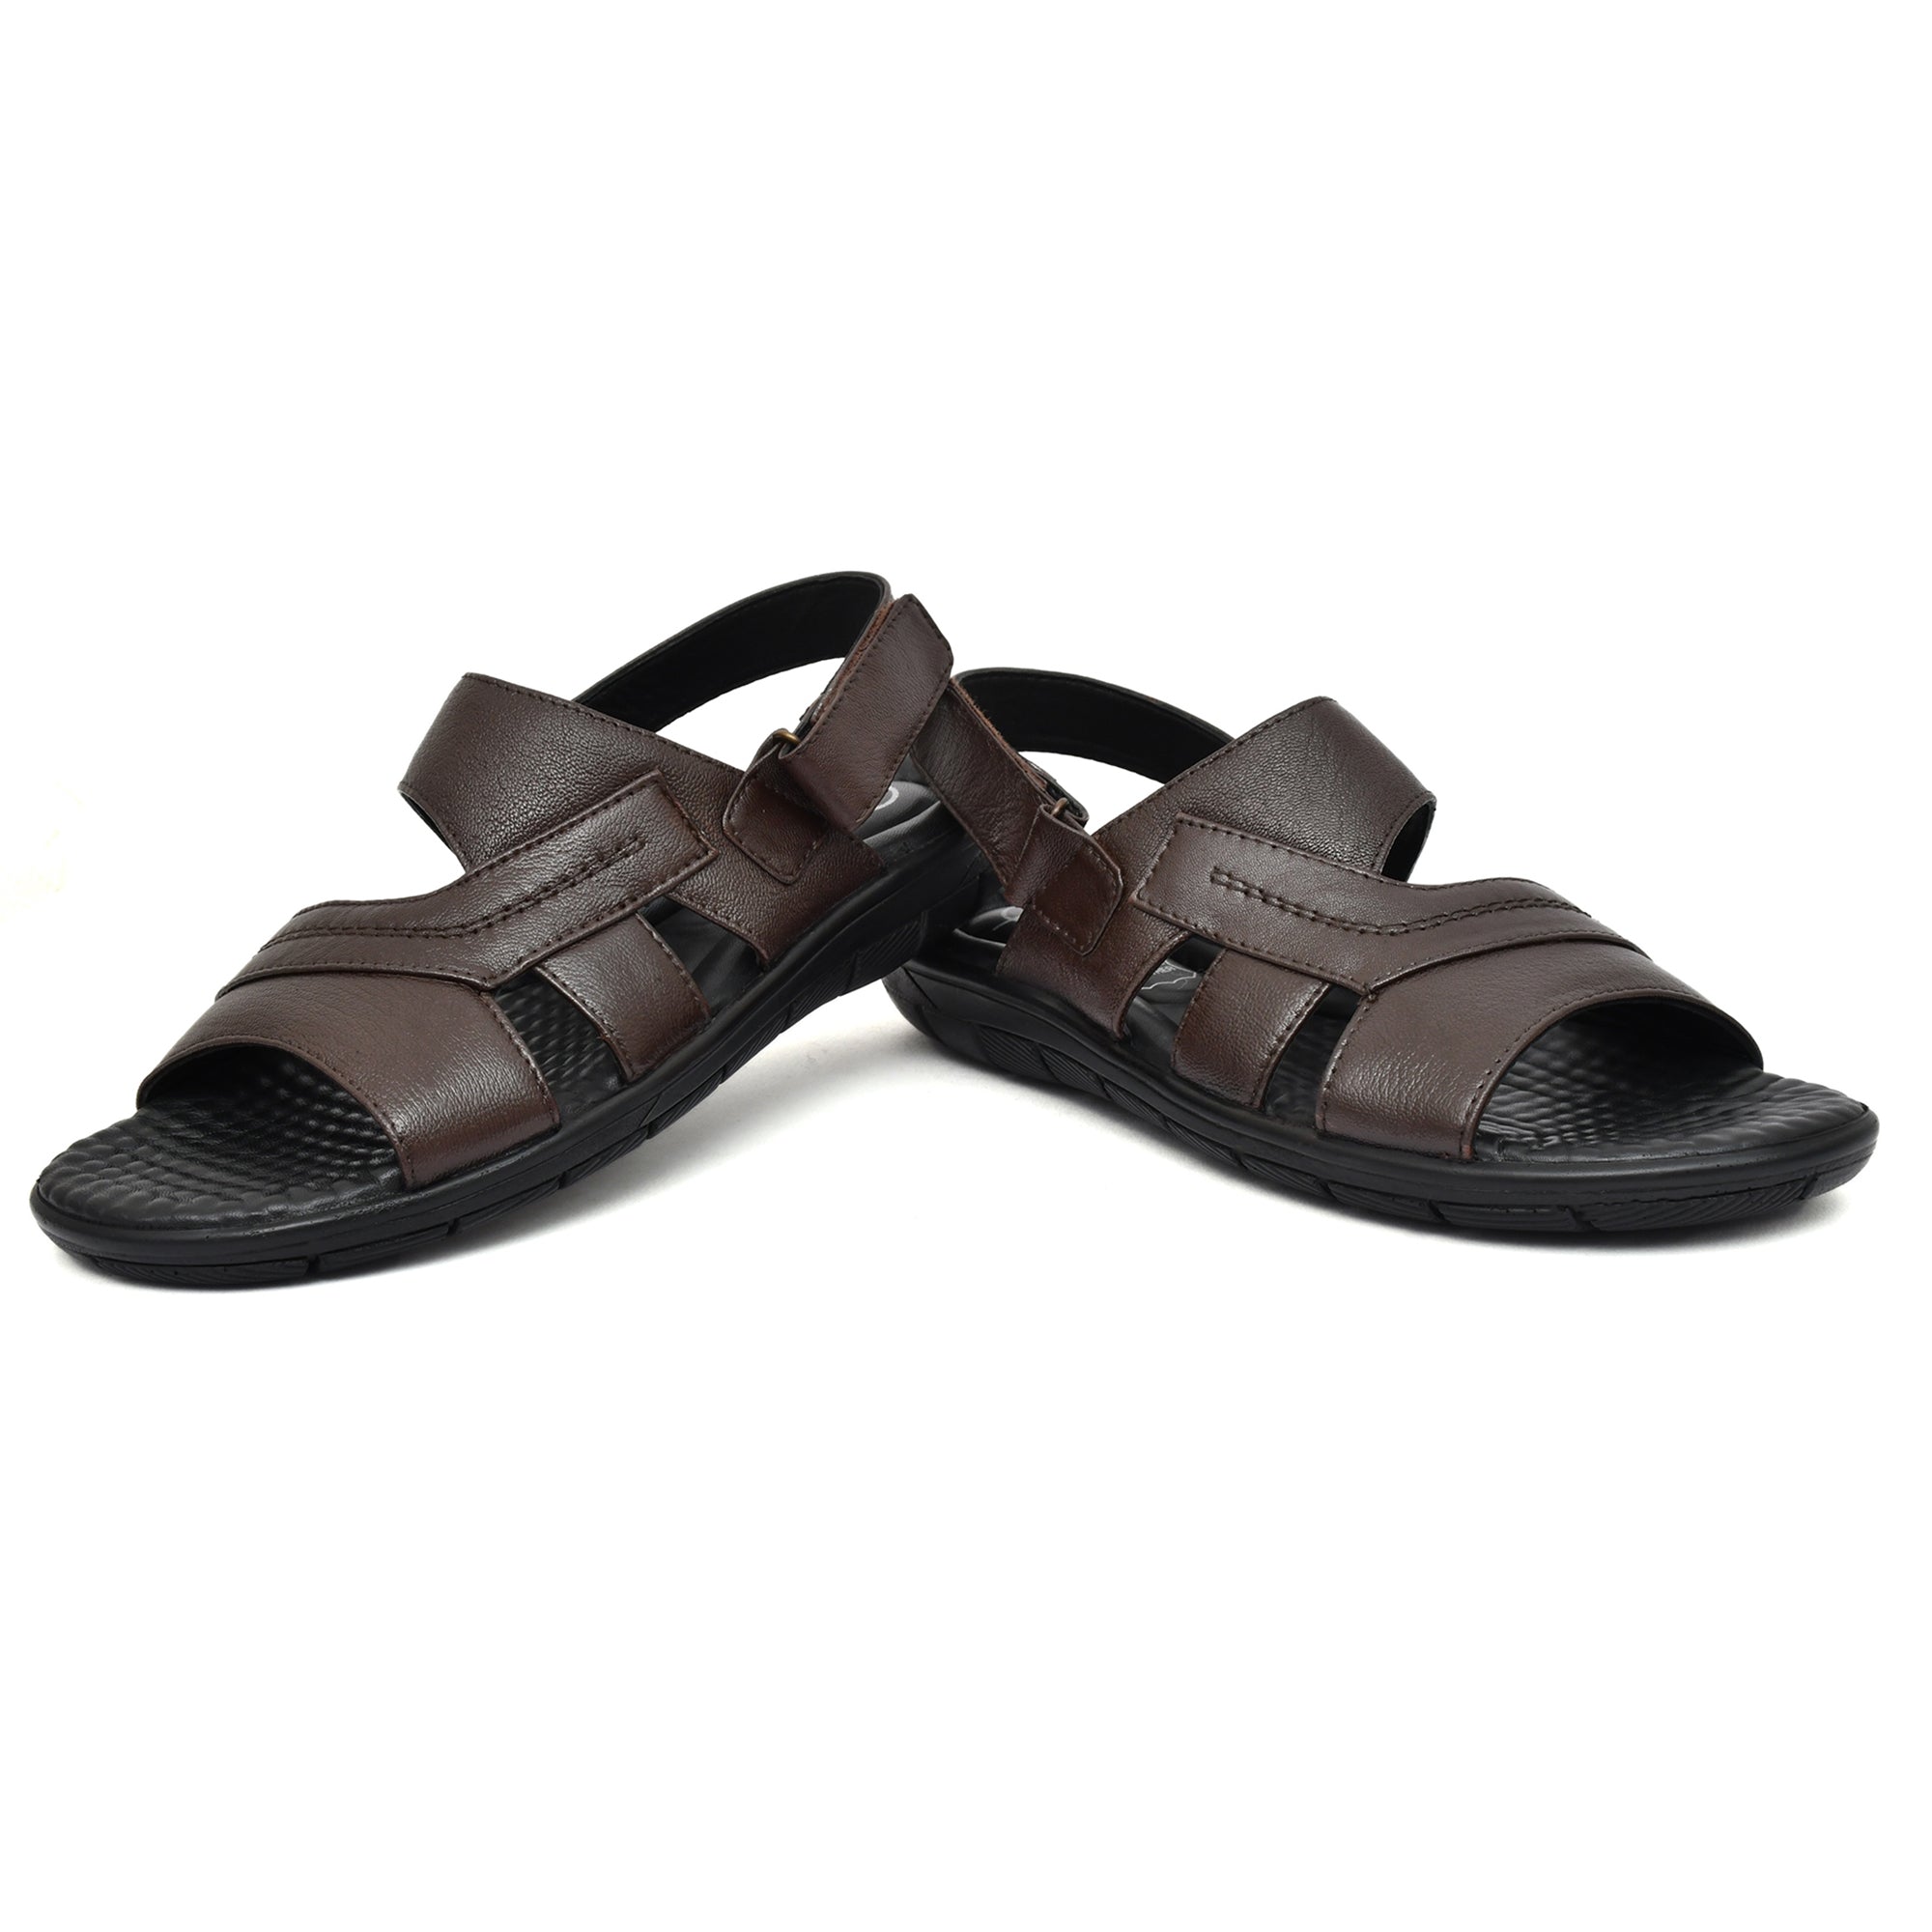 CM Leather Sandal's for men's